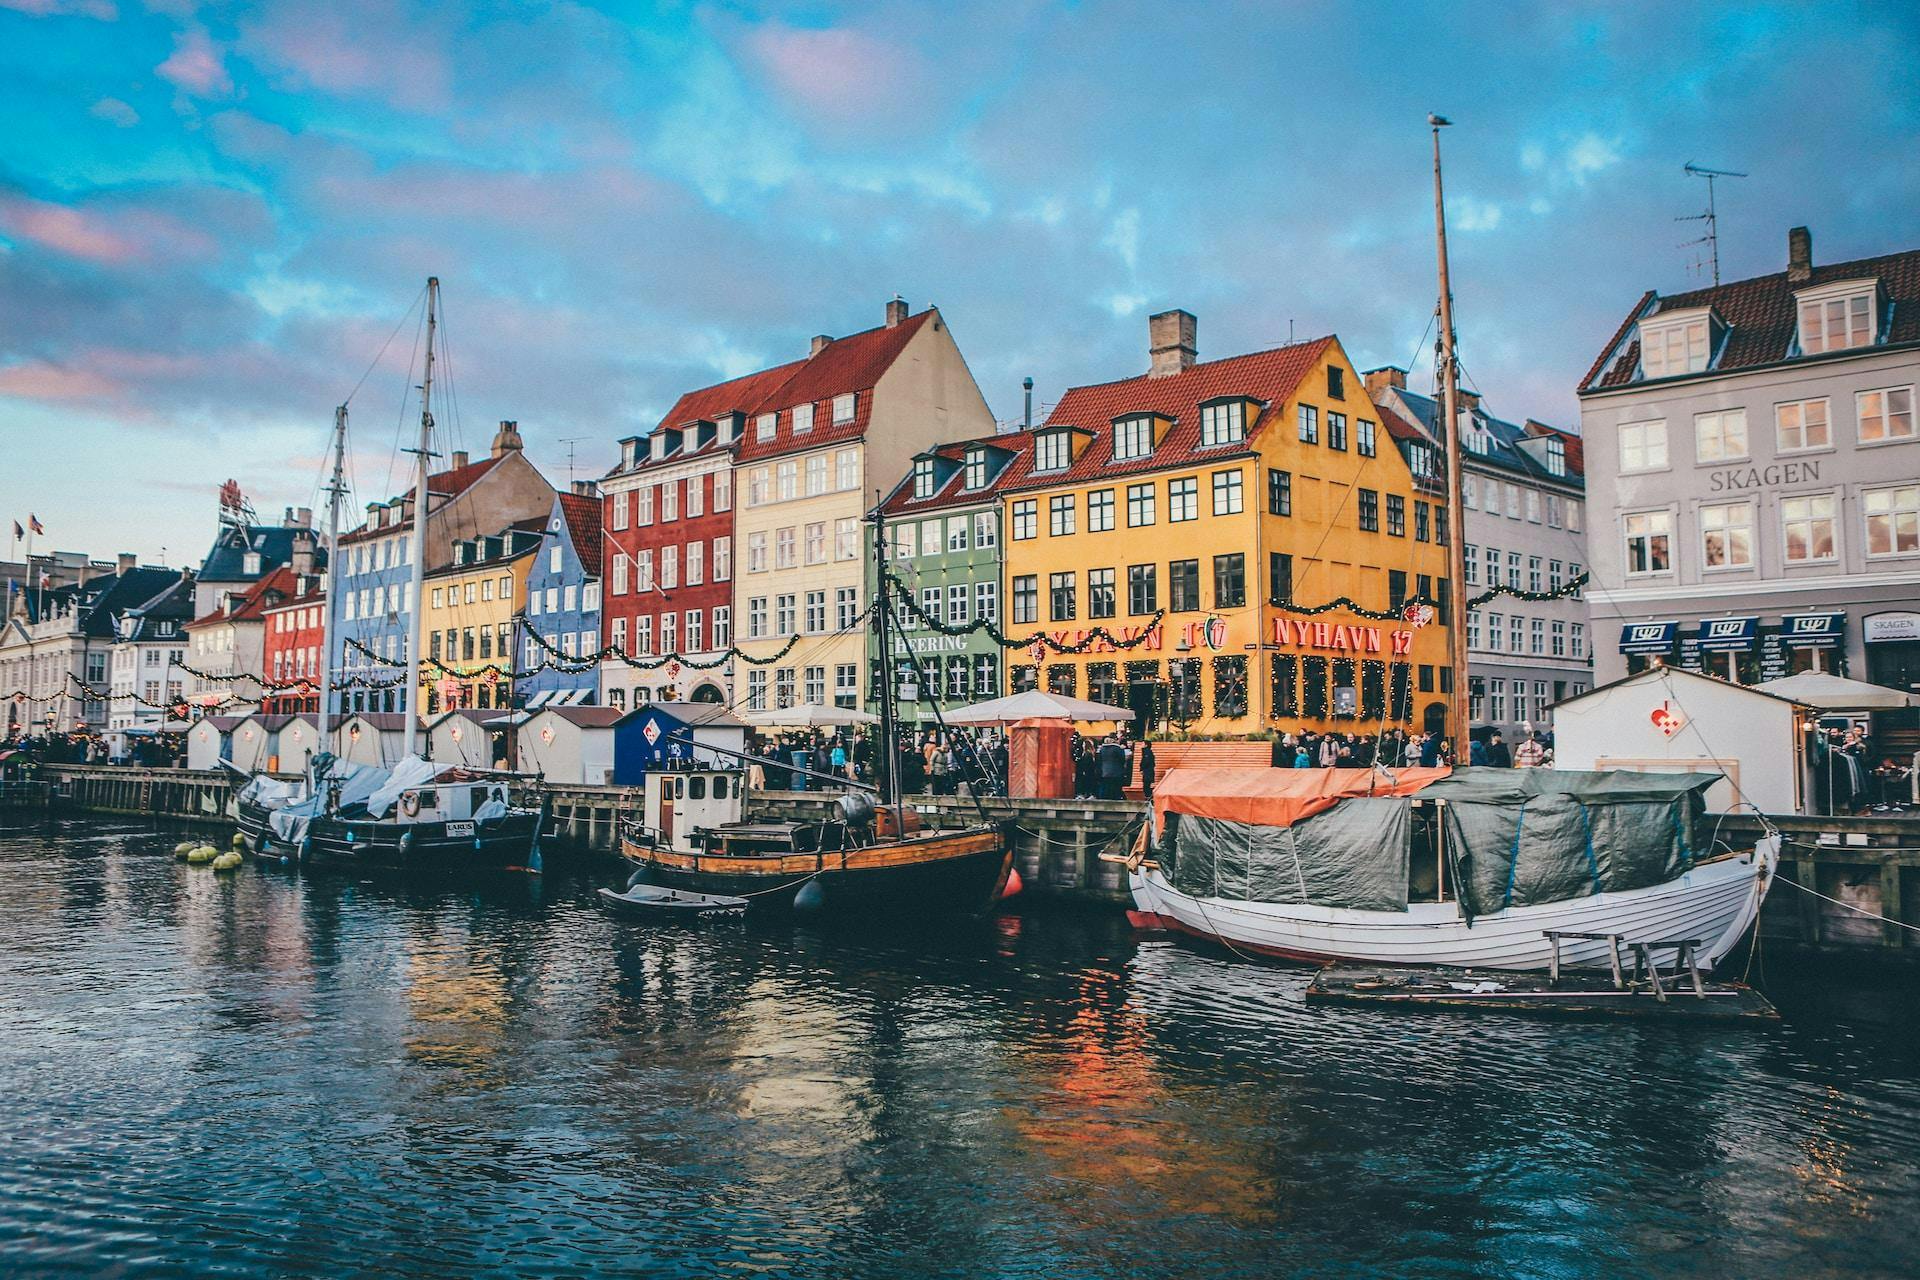 Copenhagen as one of the best cities in Europe